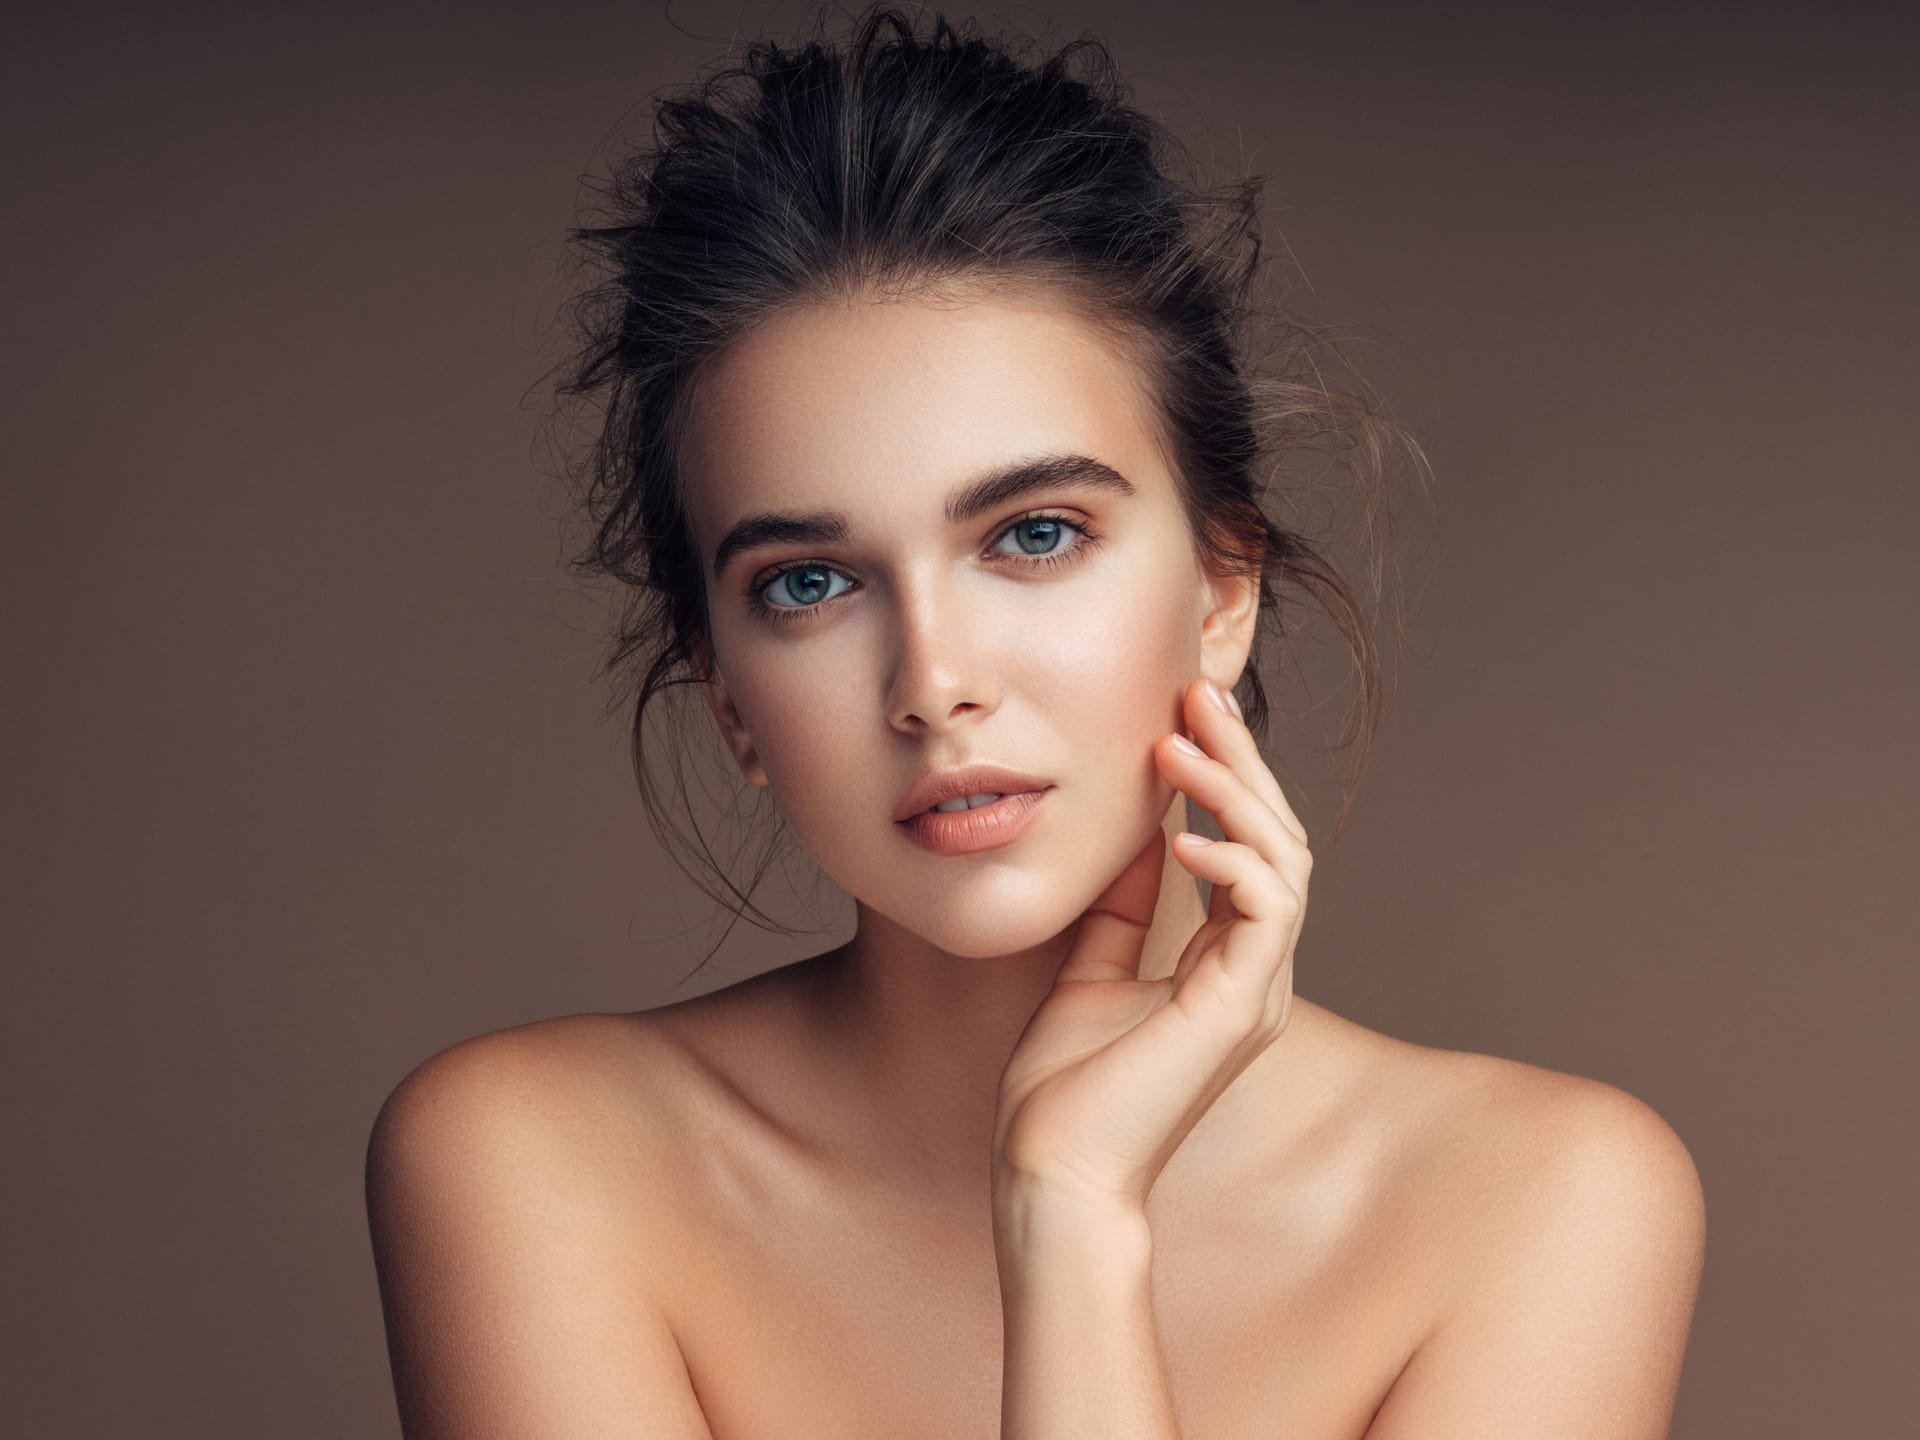 Ung kvinnelig modell for kosmetisk behandling og pigmentflekker